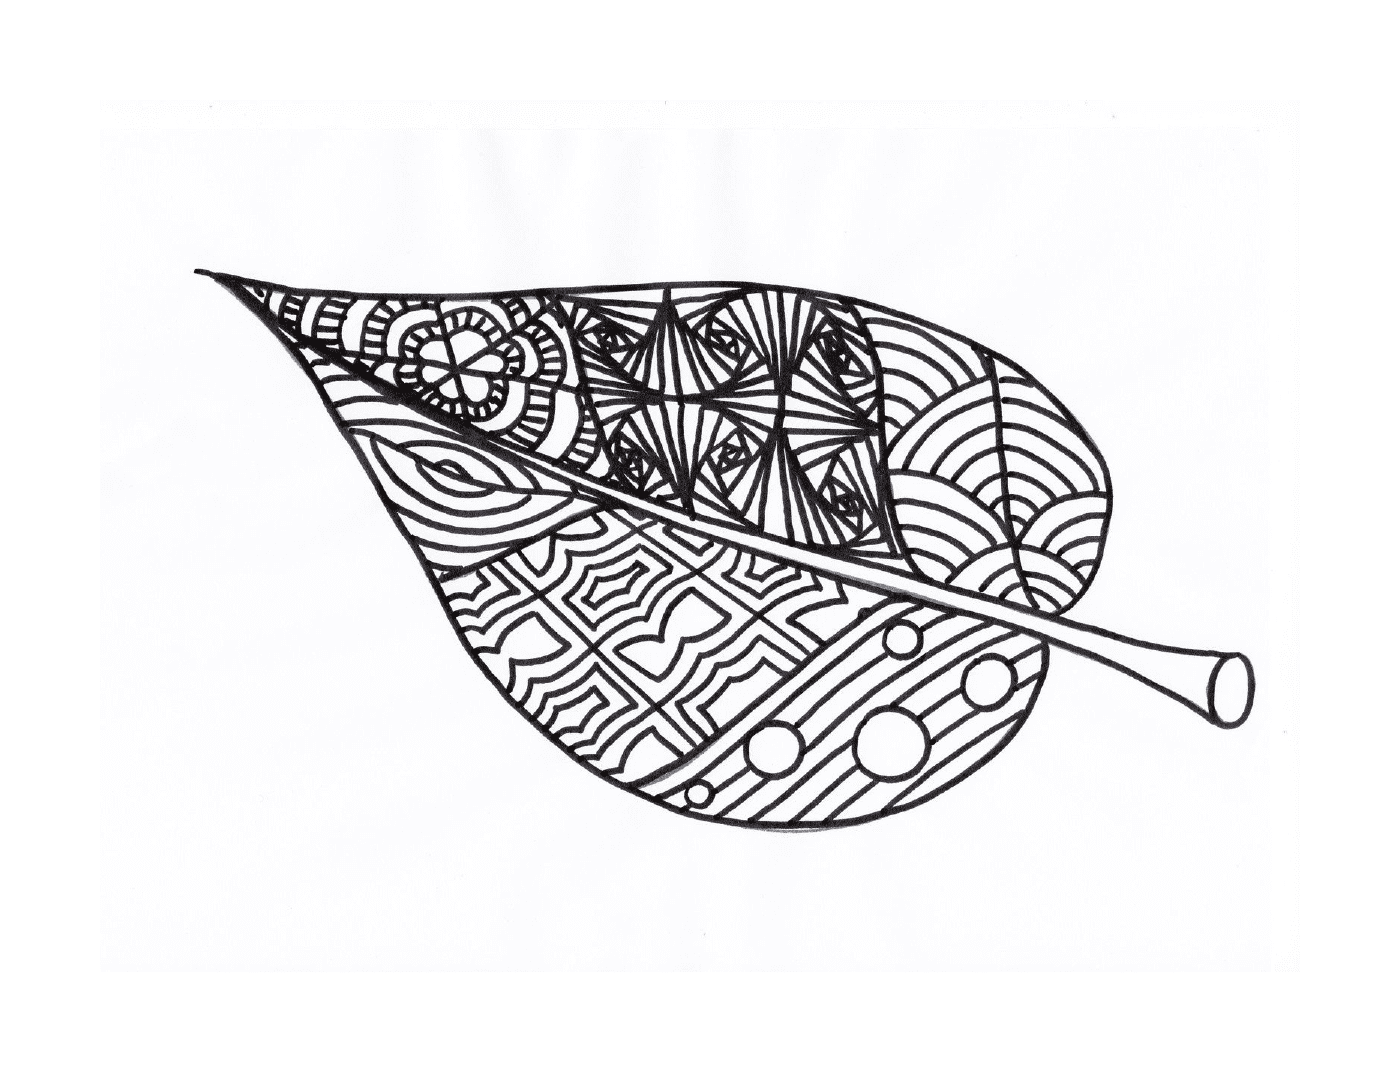  A leaf 